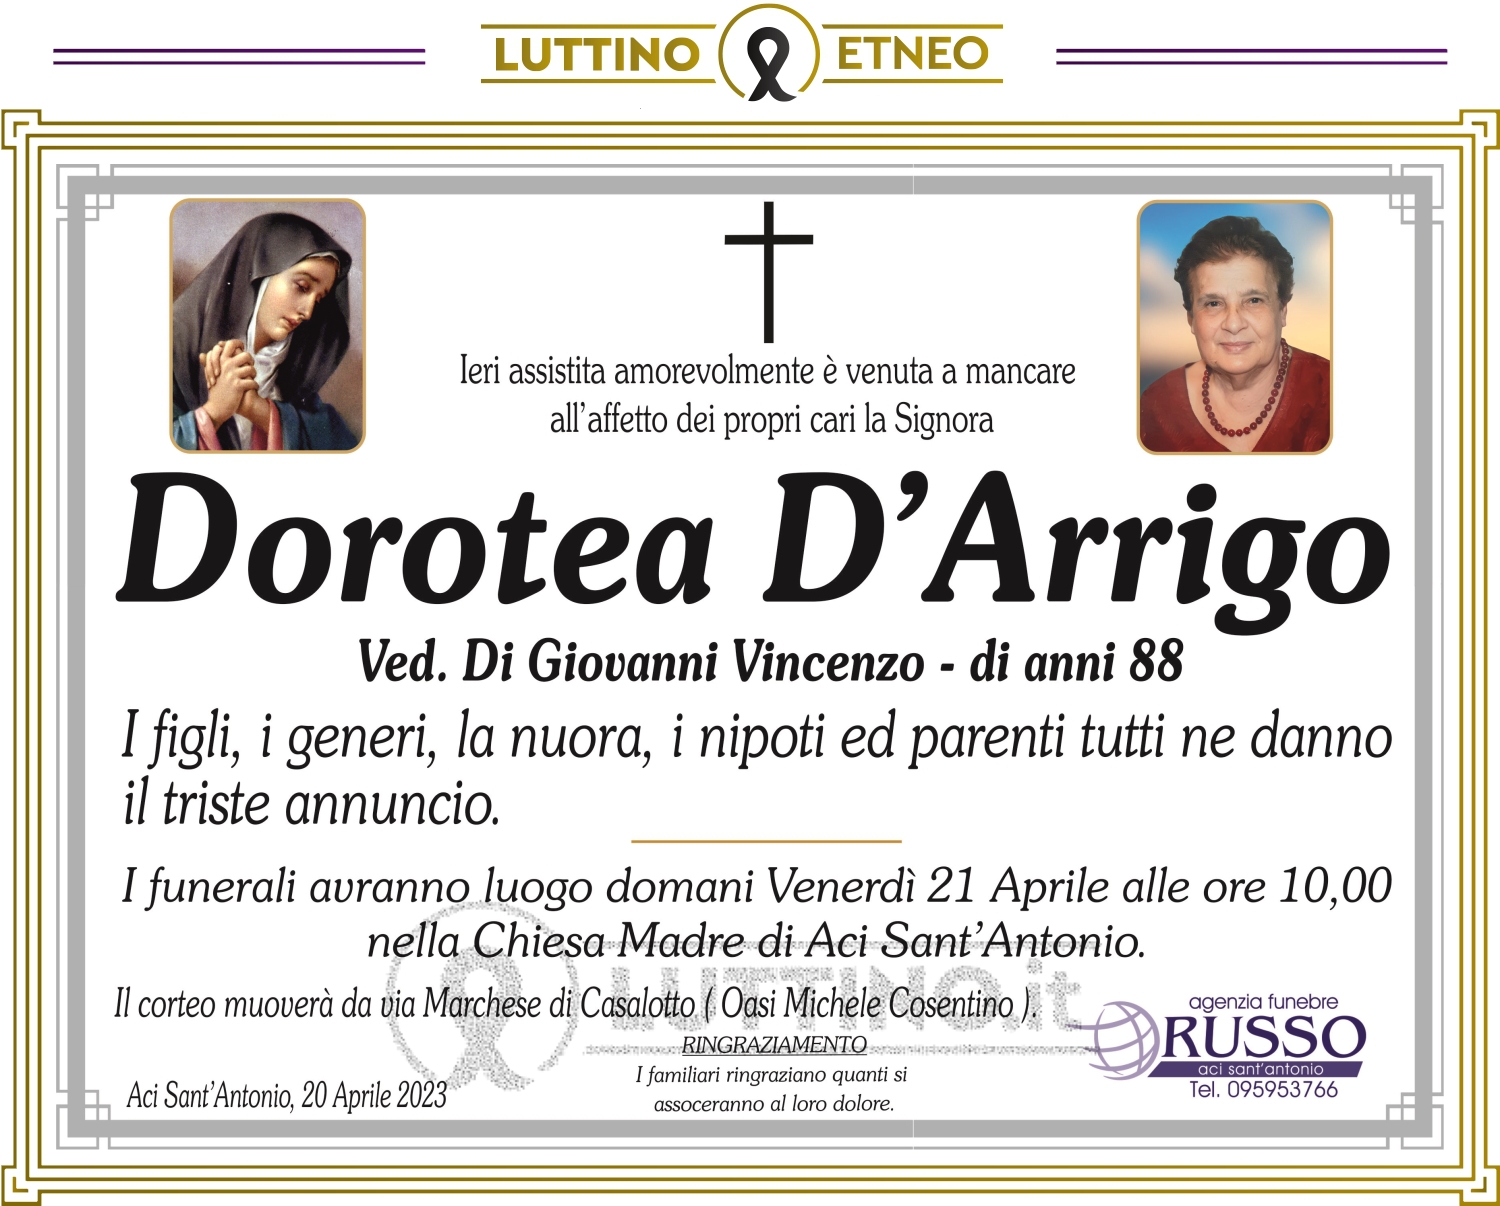 Dorotea D'Arrigo